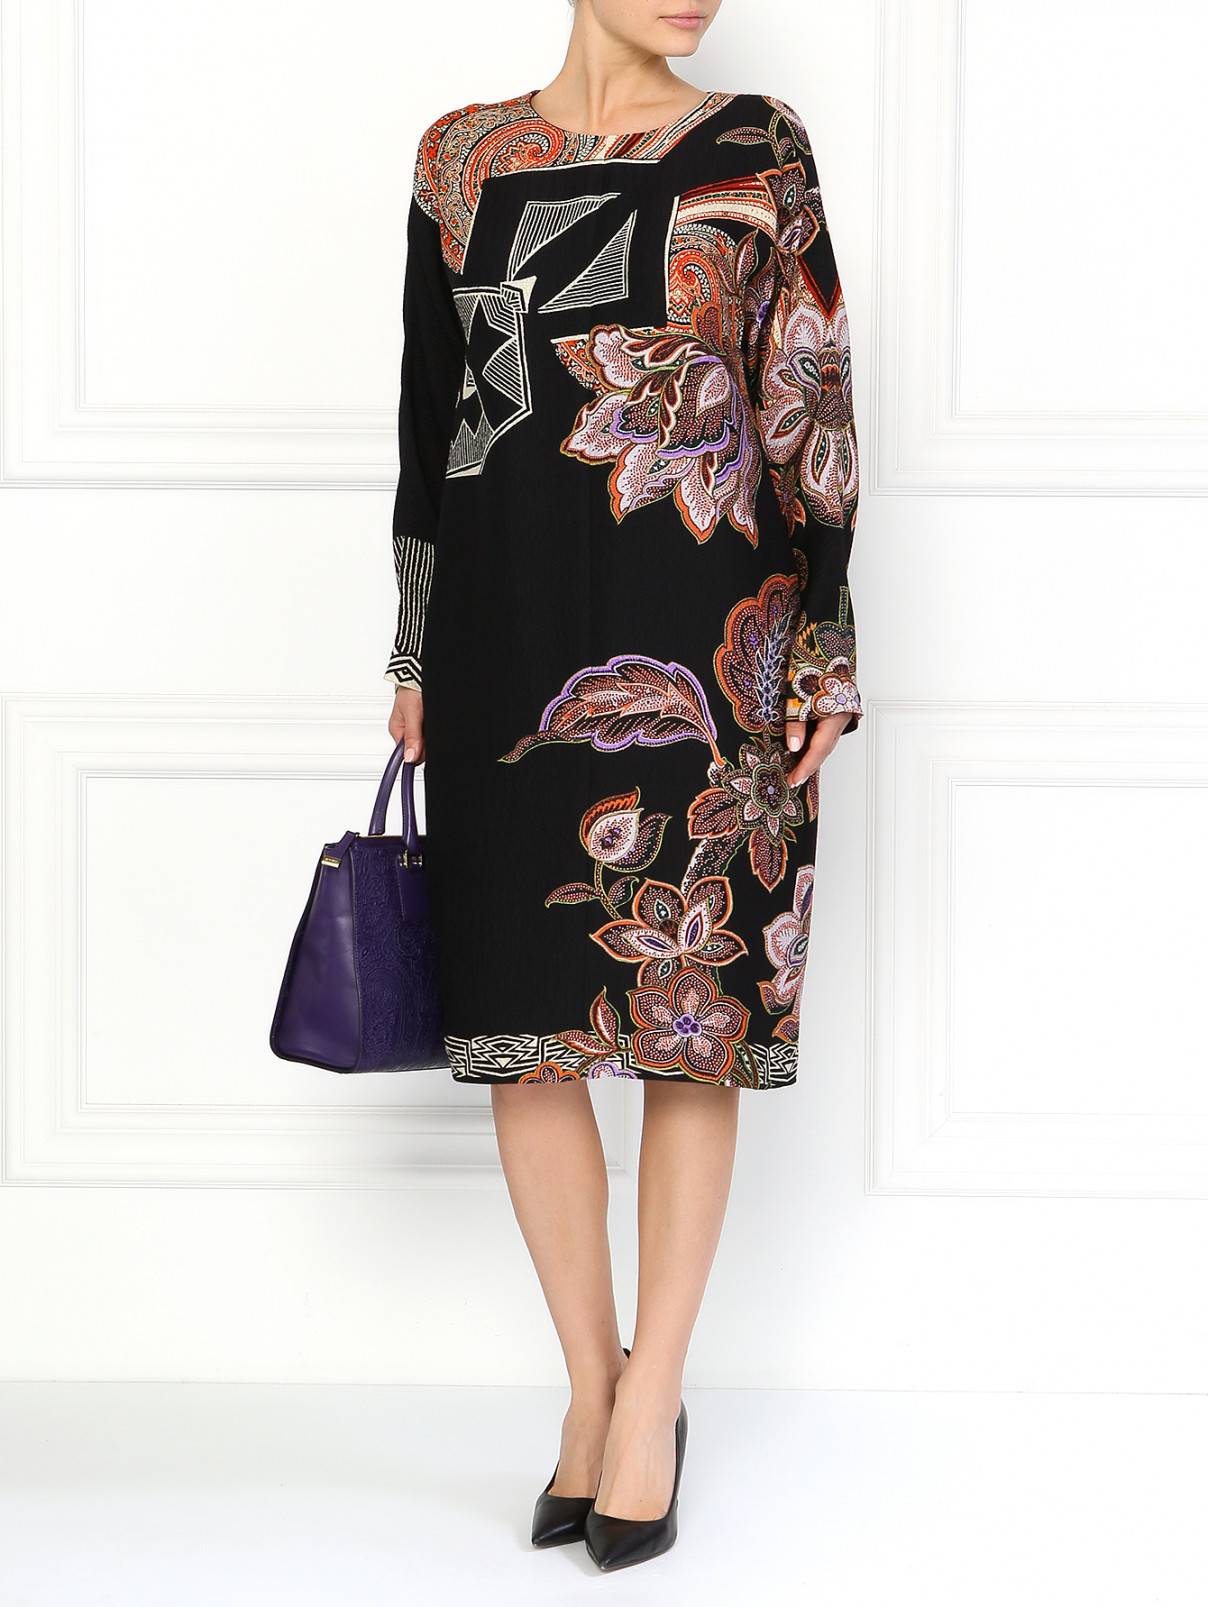 Шелковое платье с абстрактным принтом Etro  –  Модель Общий вид  – Цвет:  Узор